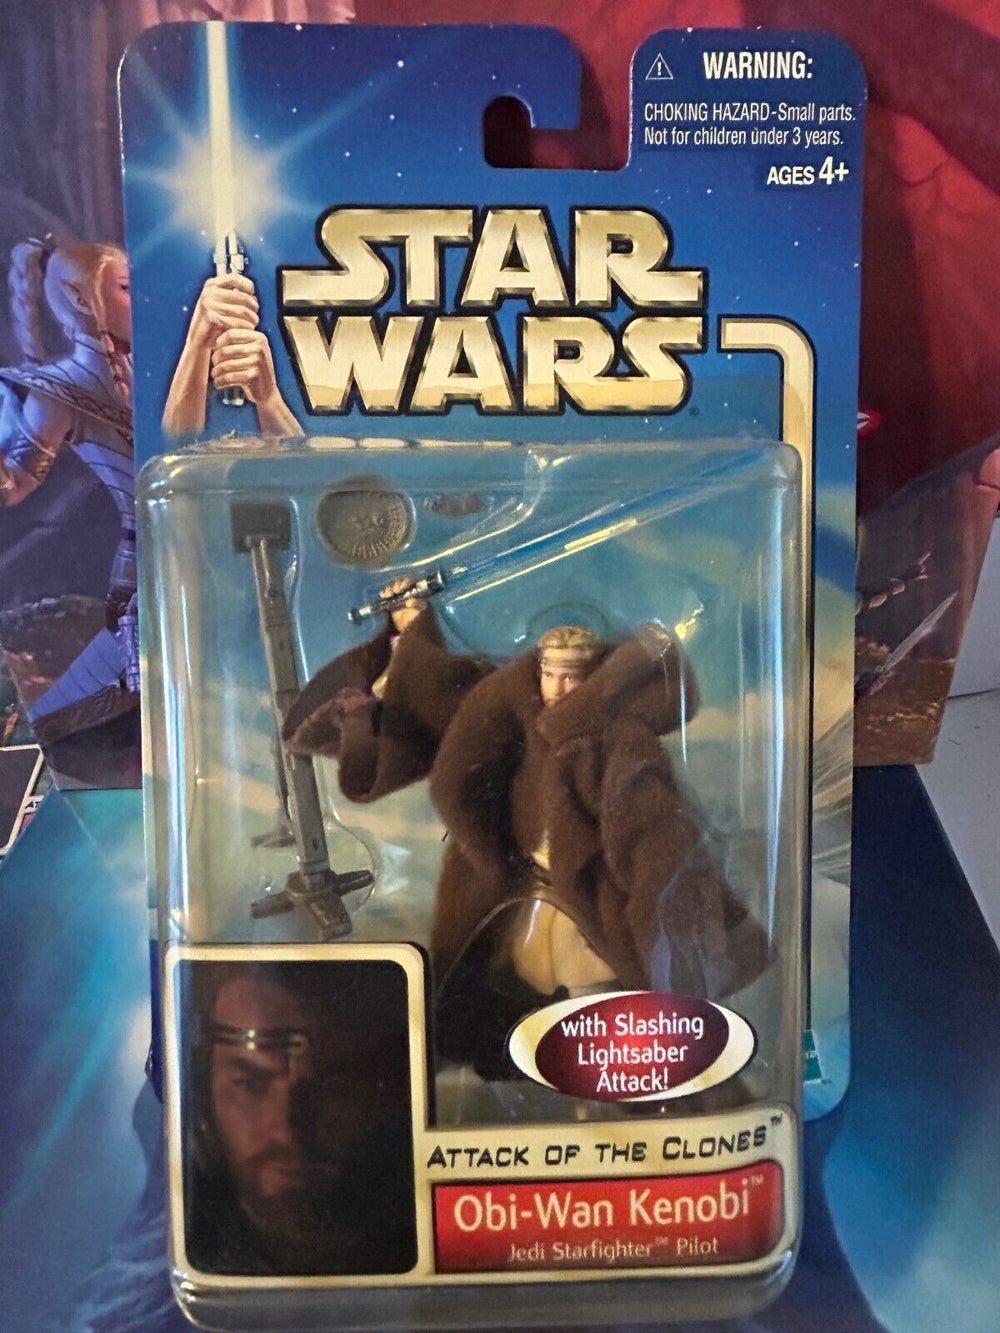 Obi-Wan Kenobi Jedi Starfighter Pilot Star Wars Attack of the Clones 2002 figure